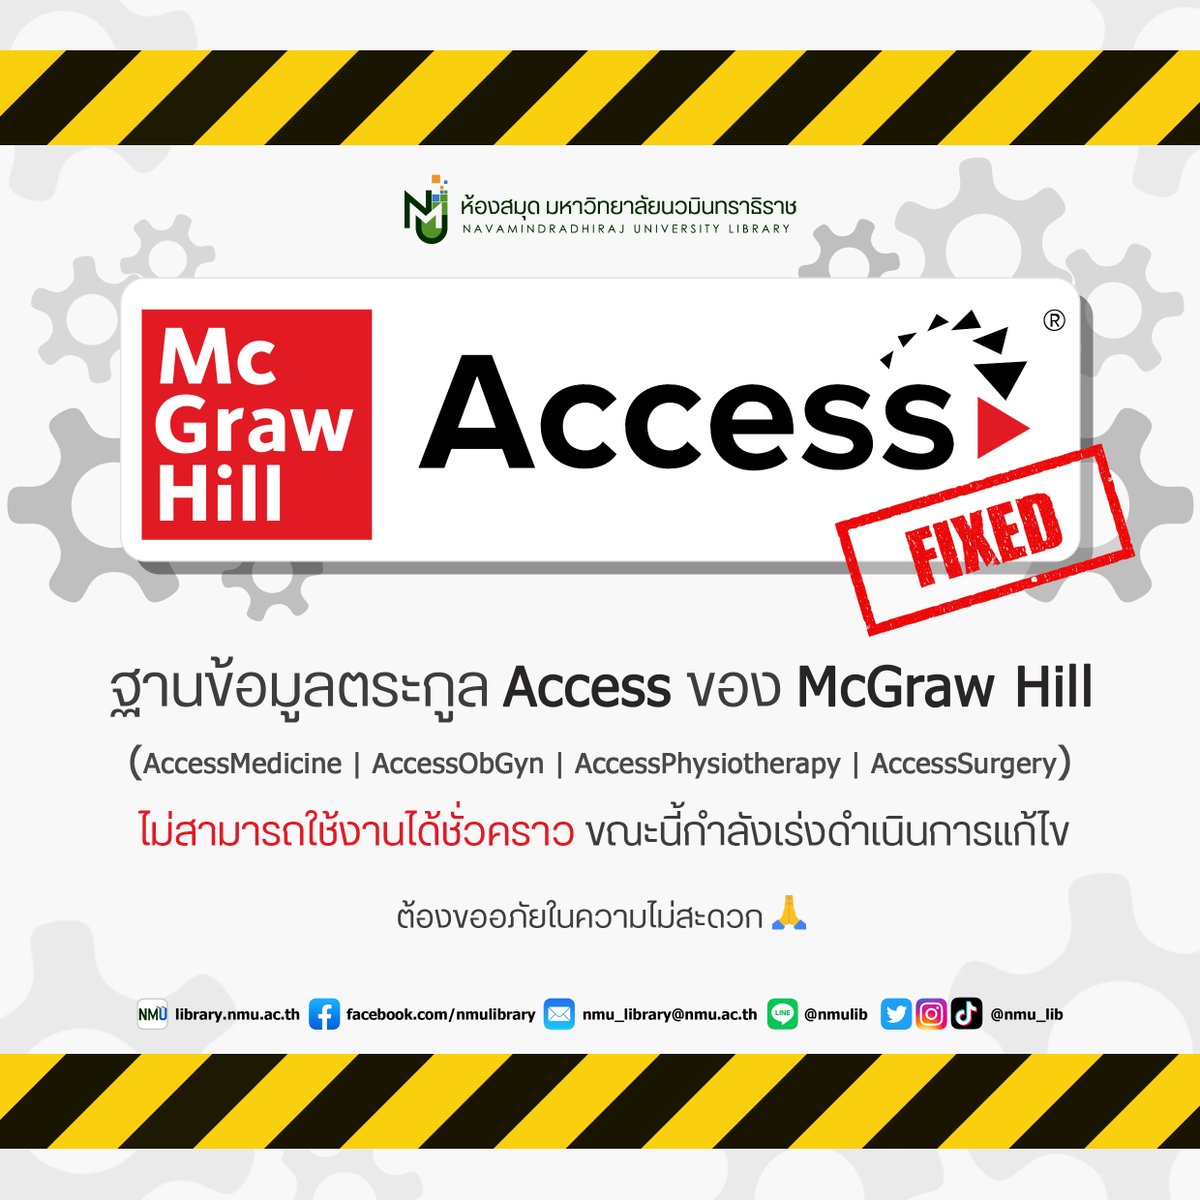 📢ประกาศ📢 ฐานข้อมูลตระกูล Access ของ McGraw Hill  ไม่สามารถใช้งานได้ชั่วคราว ขณะนี้กำลังเร่งดำเนินการแก้ไข 🛠️
- AccessMedicine 
- AccessObGyn 
- AccessPhysiotheraphy
- AccessSurgery
ต้องขออภัยในความไม่สะดวก 🙏
#NMUlibrary #มหาลัยนวมินทราธิราช